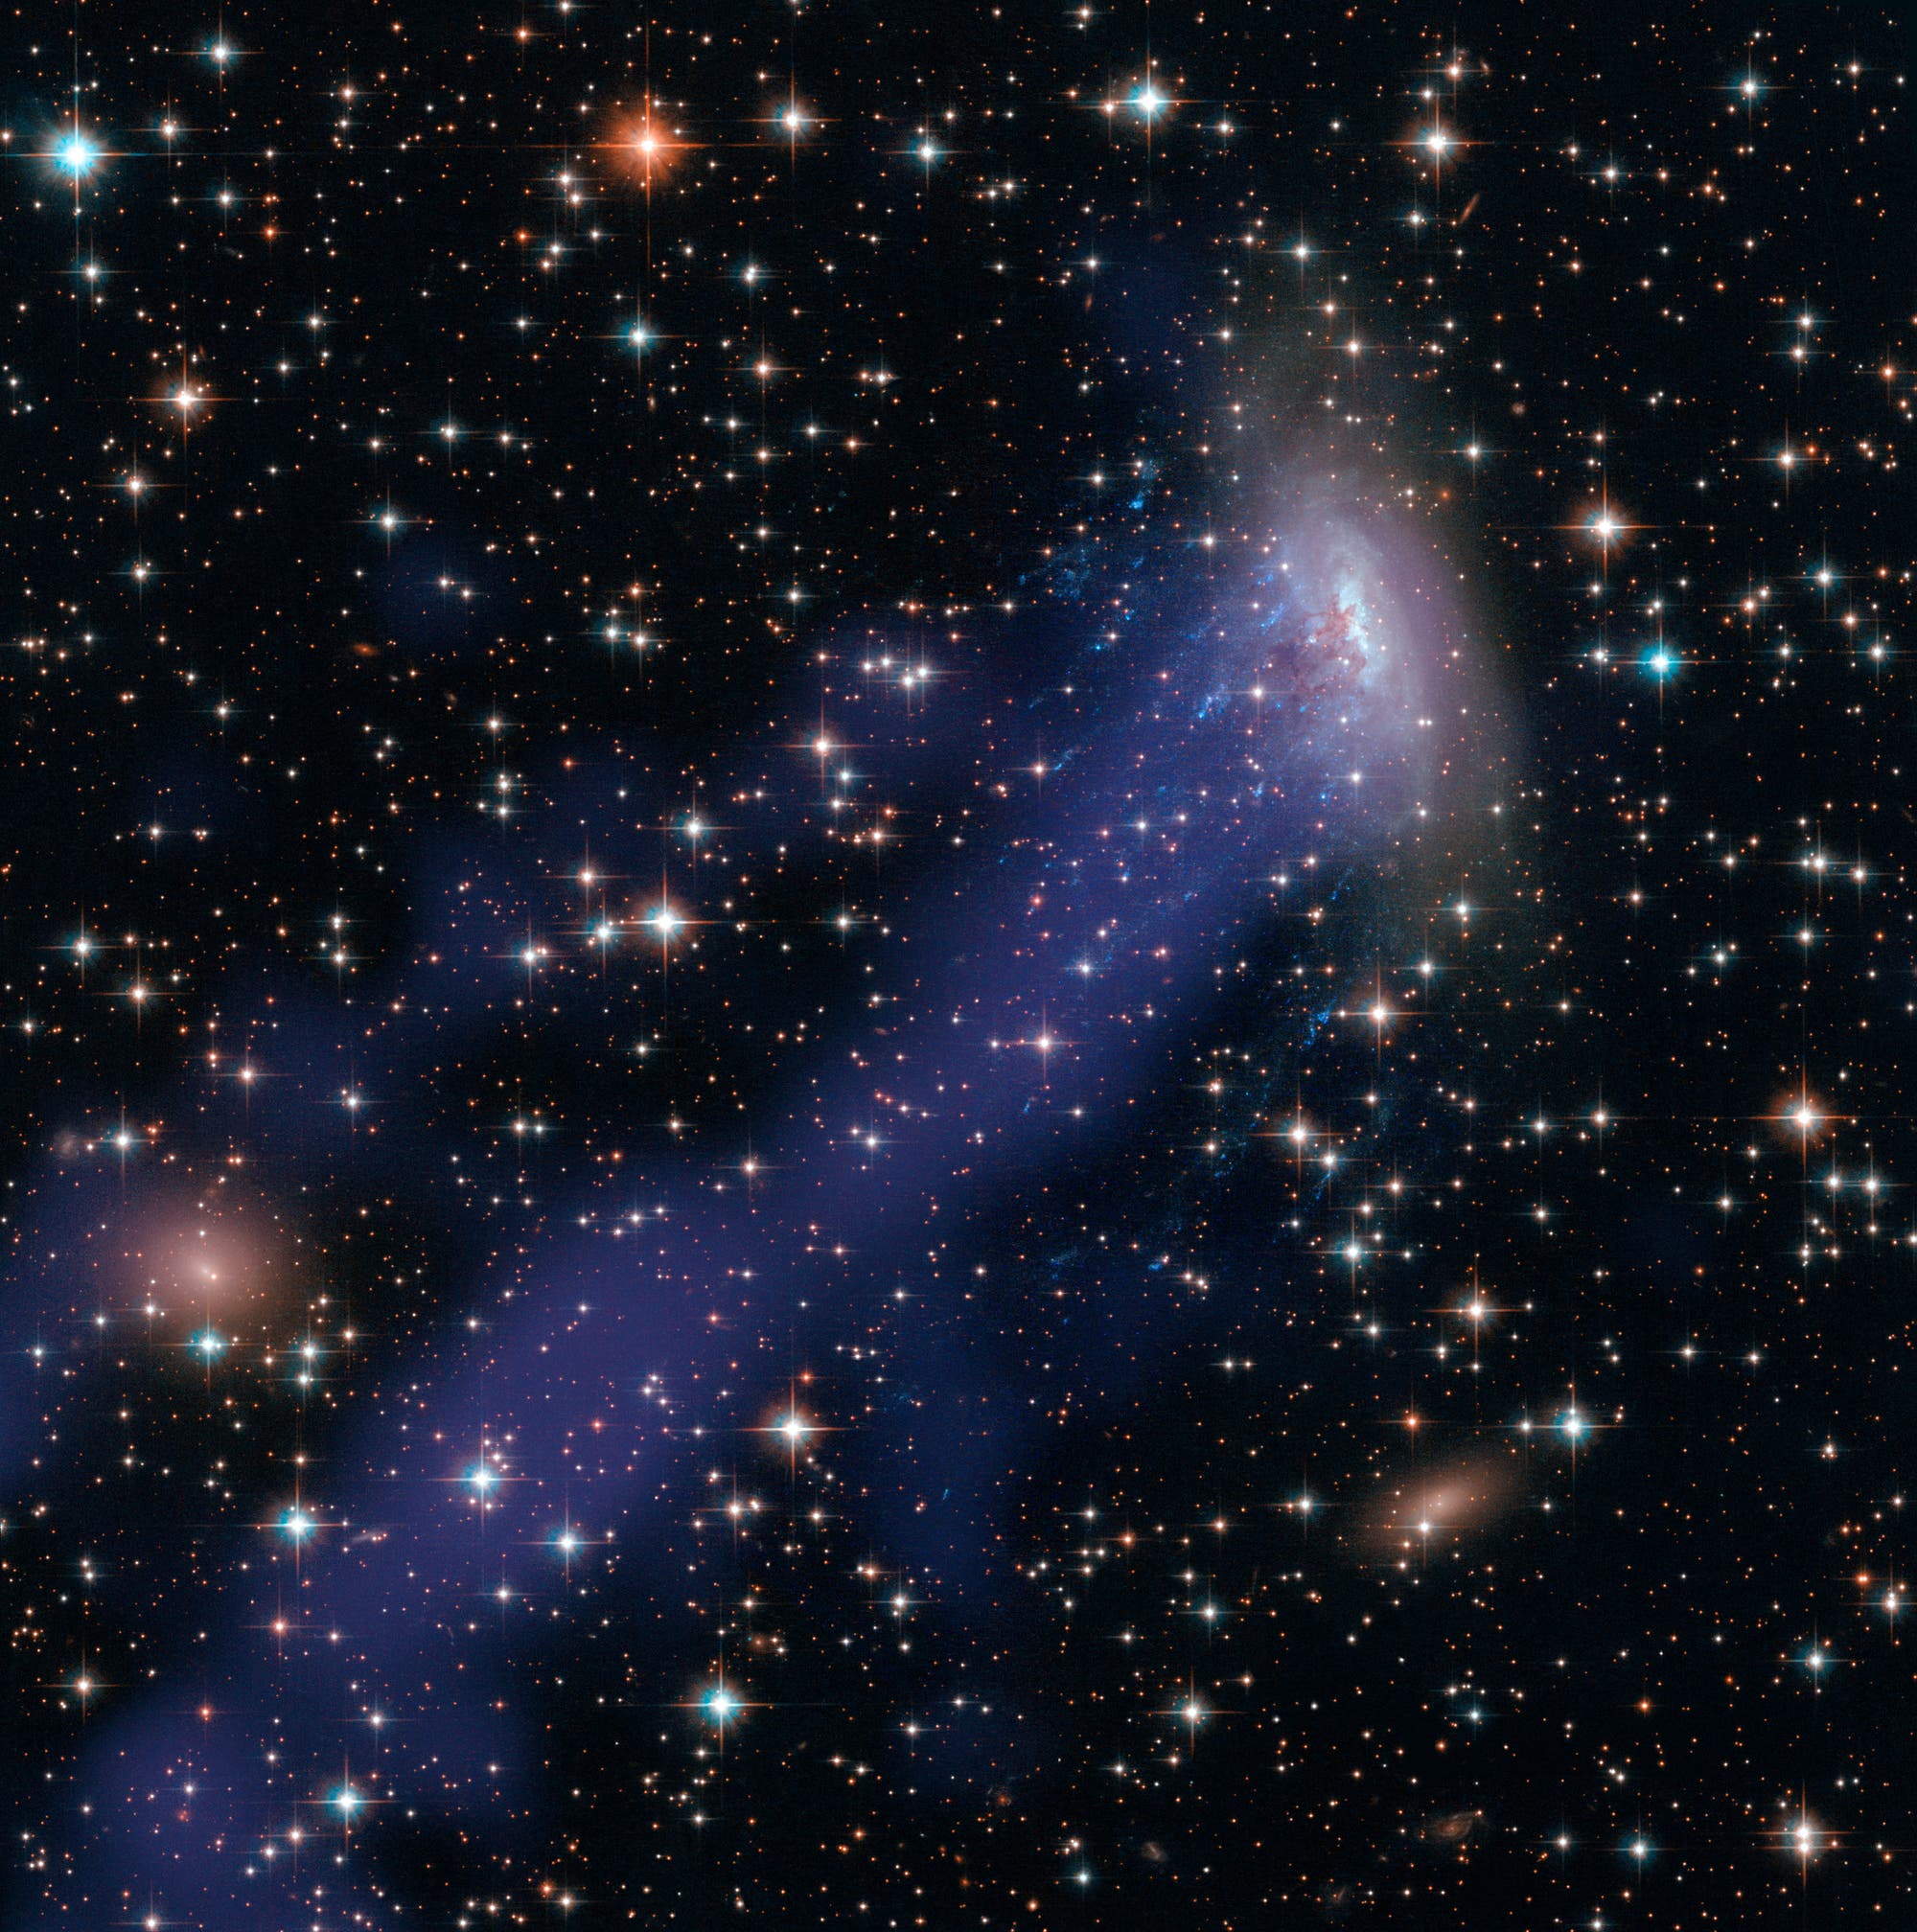 Der lange Schweif der Spiralgalaxie ESO 137-001 (Komposit aus Bildern der Weltraumteleskope Hubble und Chandra)